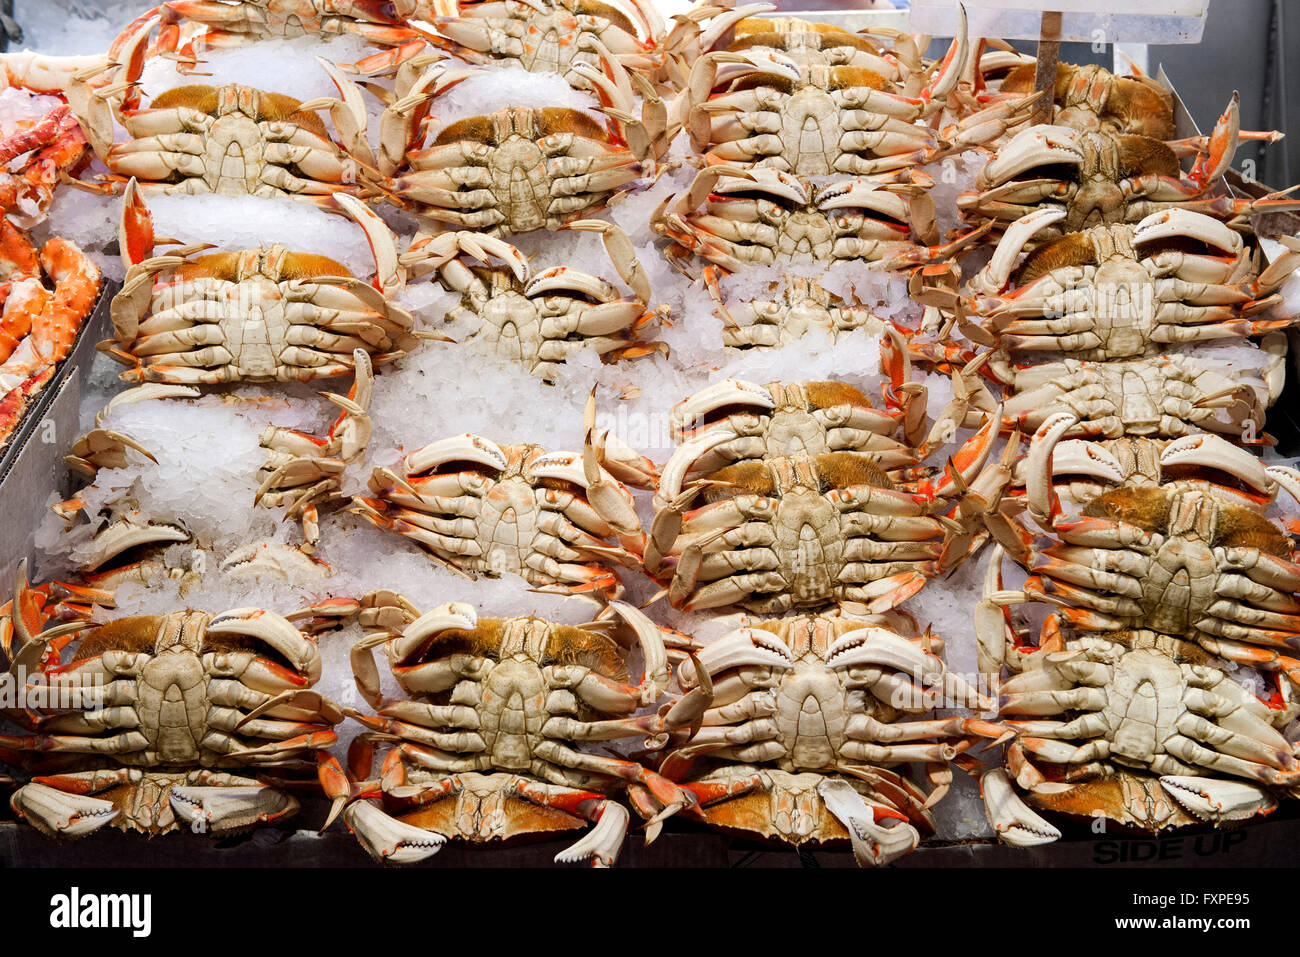 Frische Krabben auf dem Eis im Markt Stockfoto